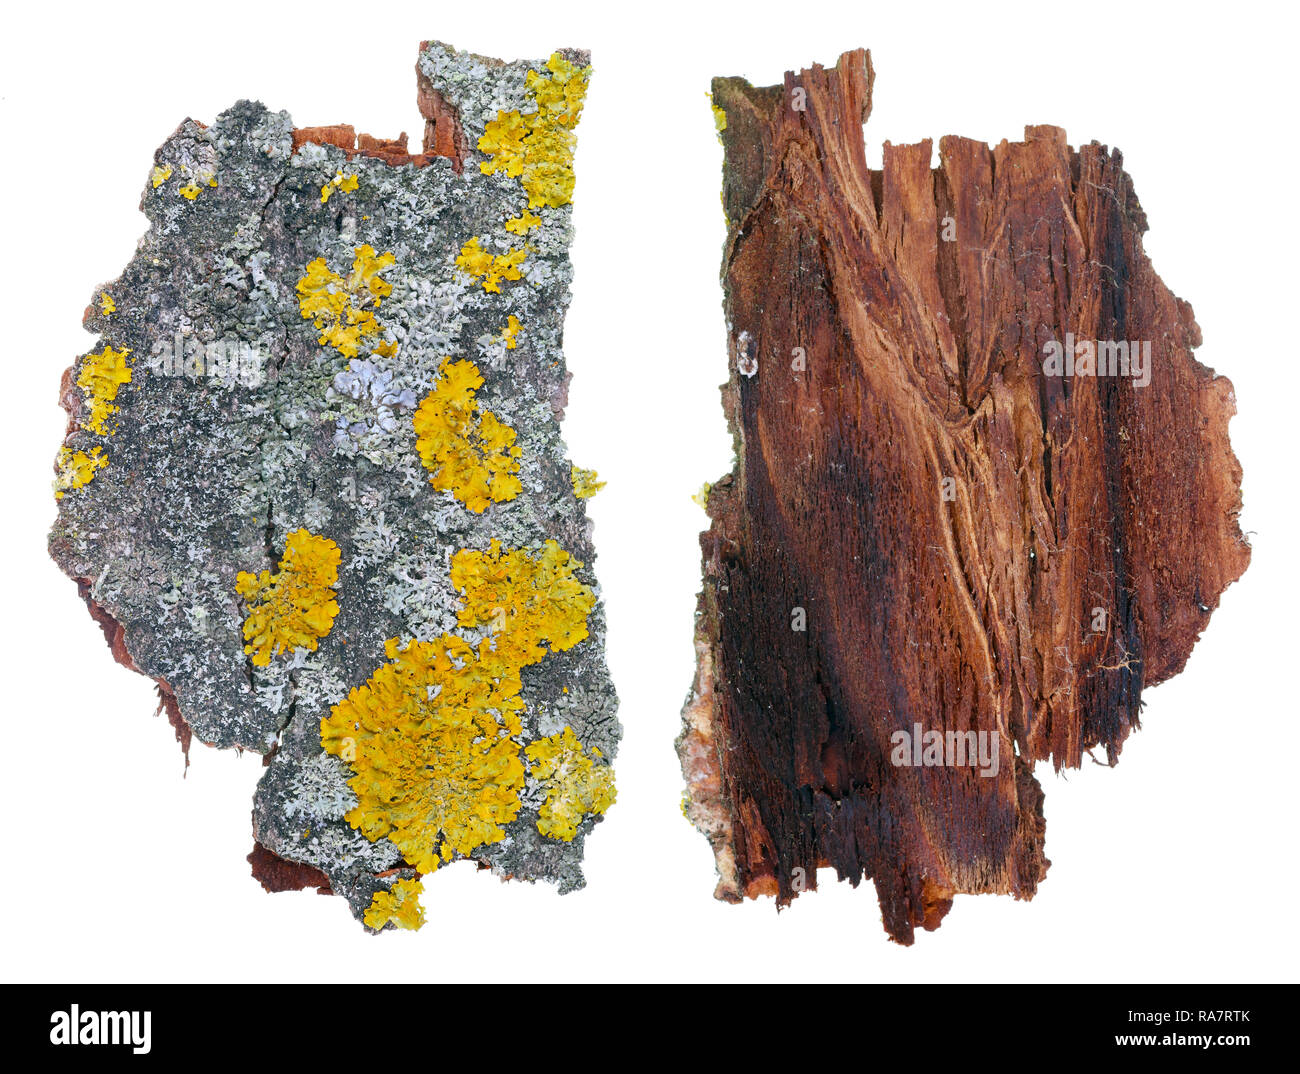 Frammento di naturale della foresta europea grigio e giallo muschi e licheni impianto su aspen di corteccia di albero. Isolato su bianco studio shot macro Foto Stock